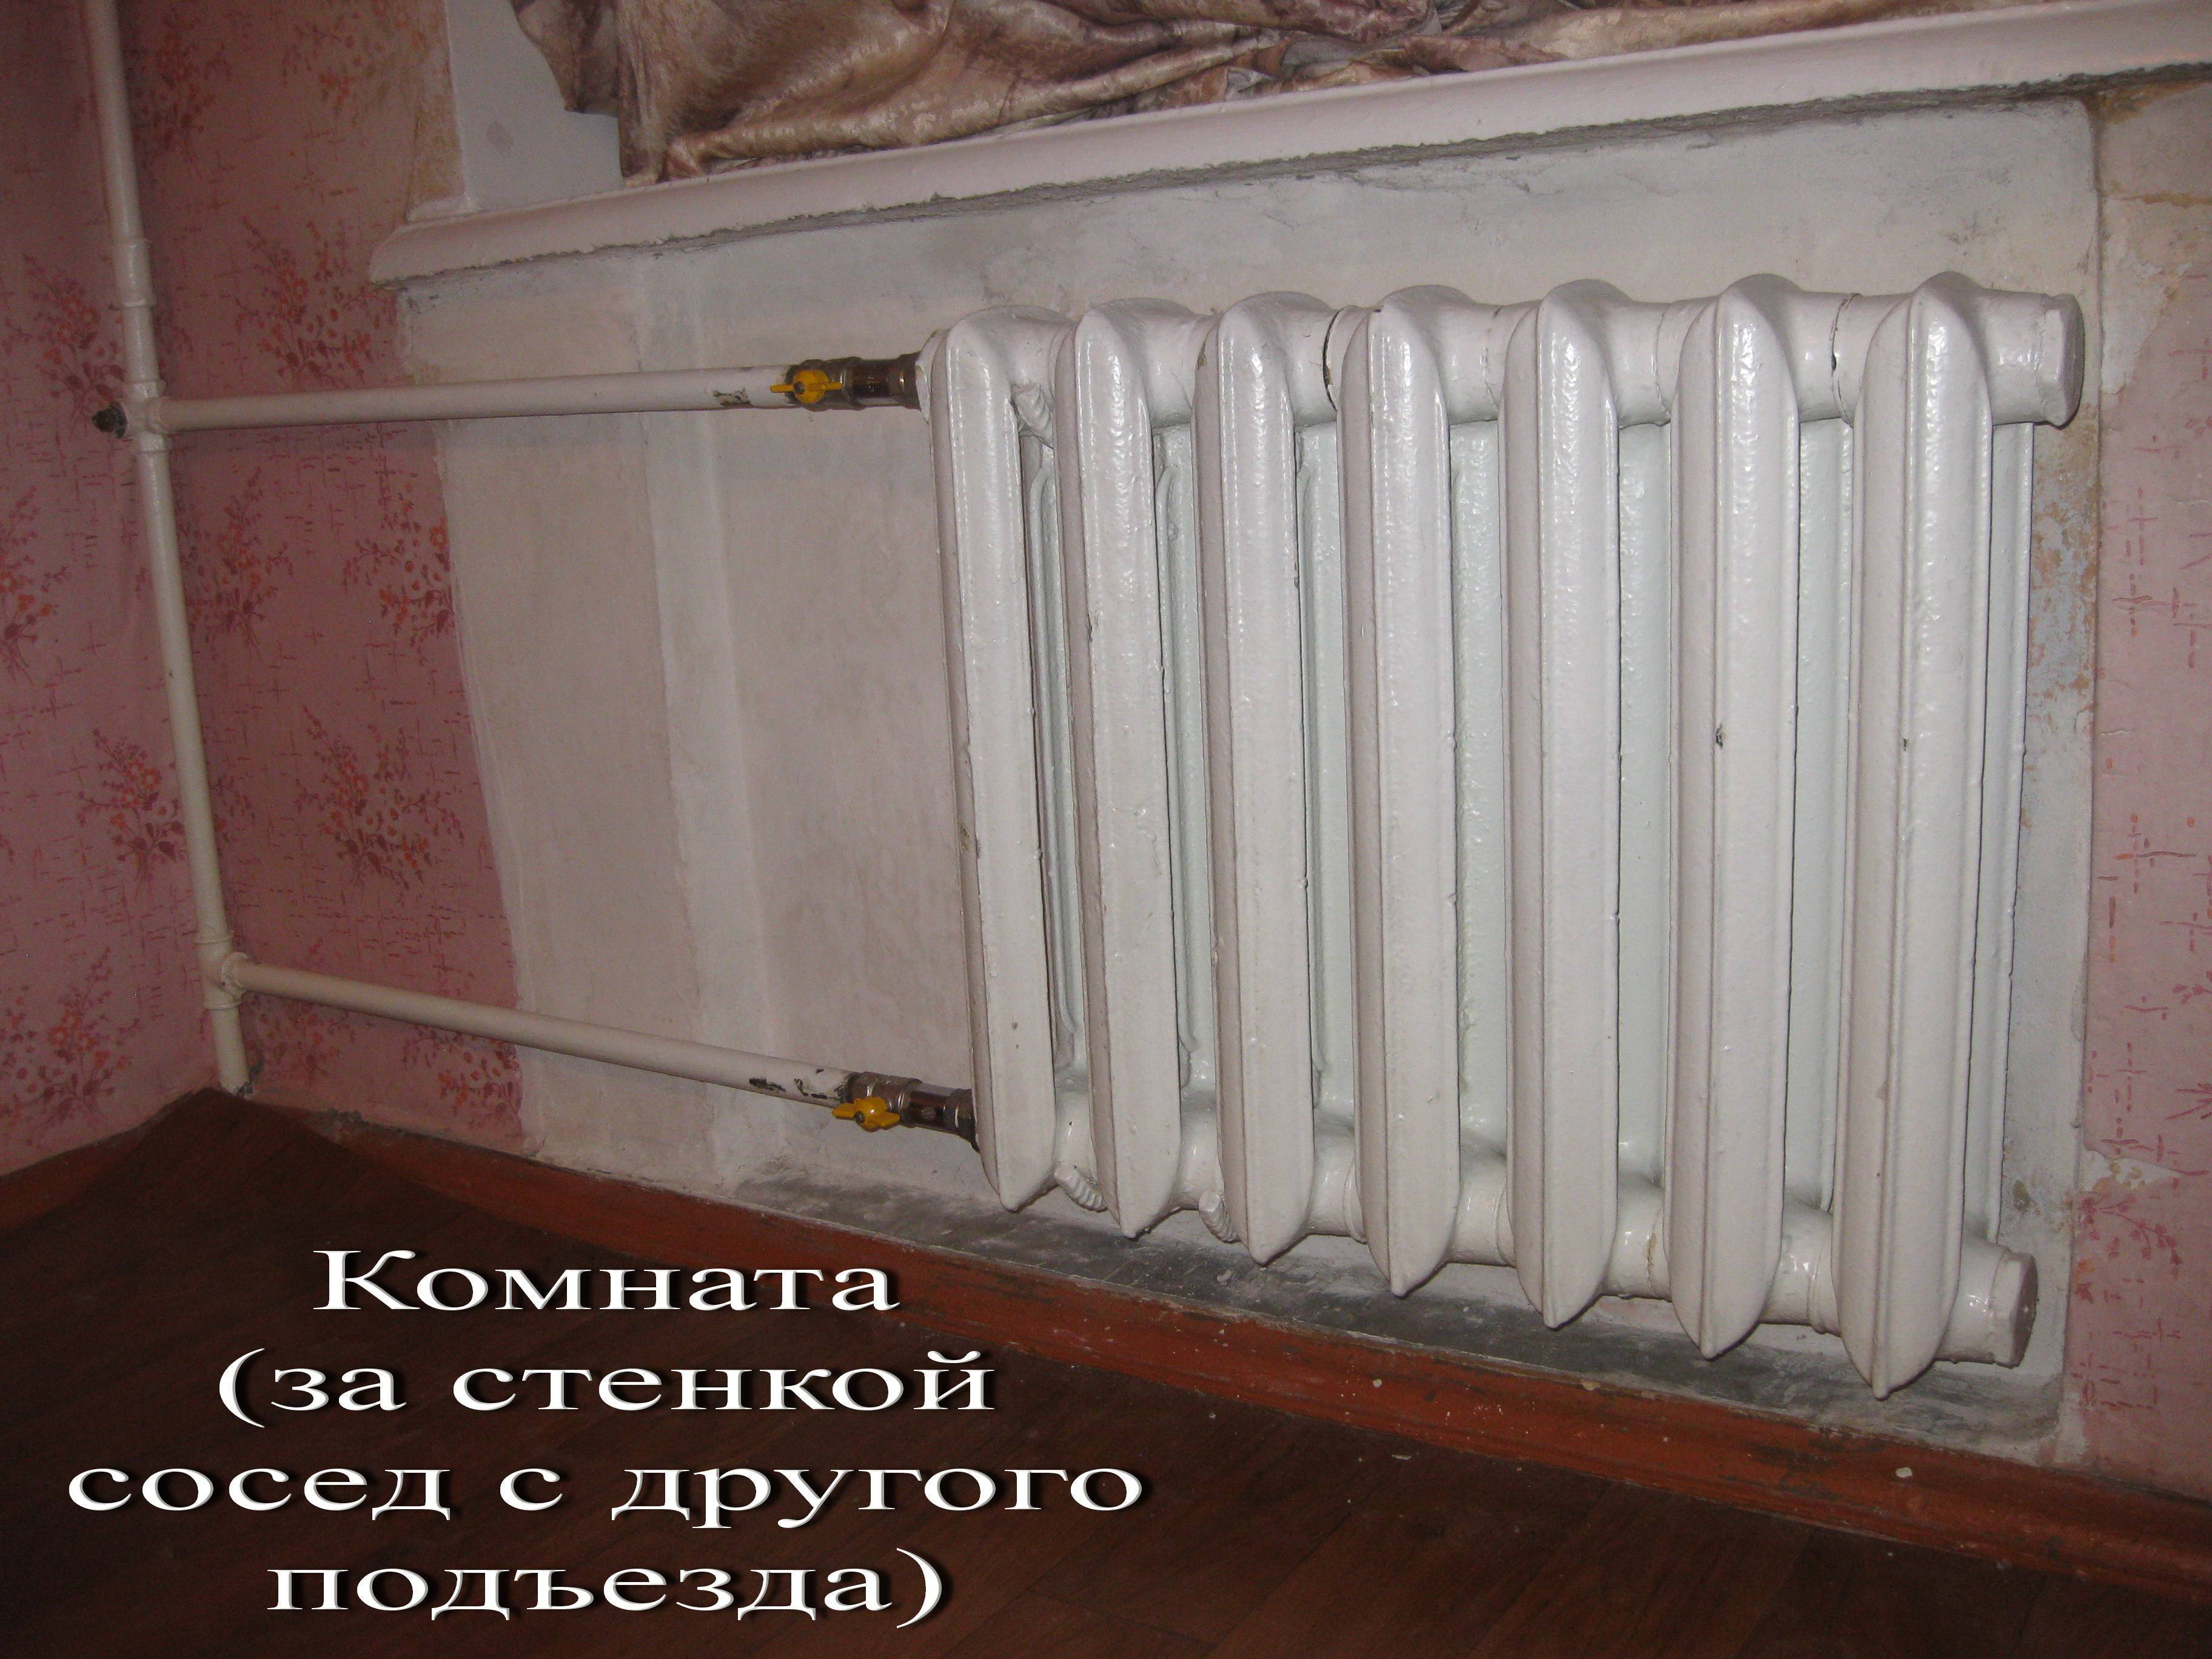 Когда радиаторы горячие, а в квартире холодно: варианты решений